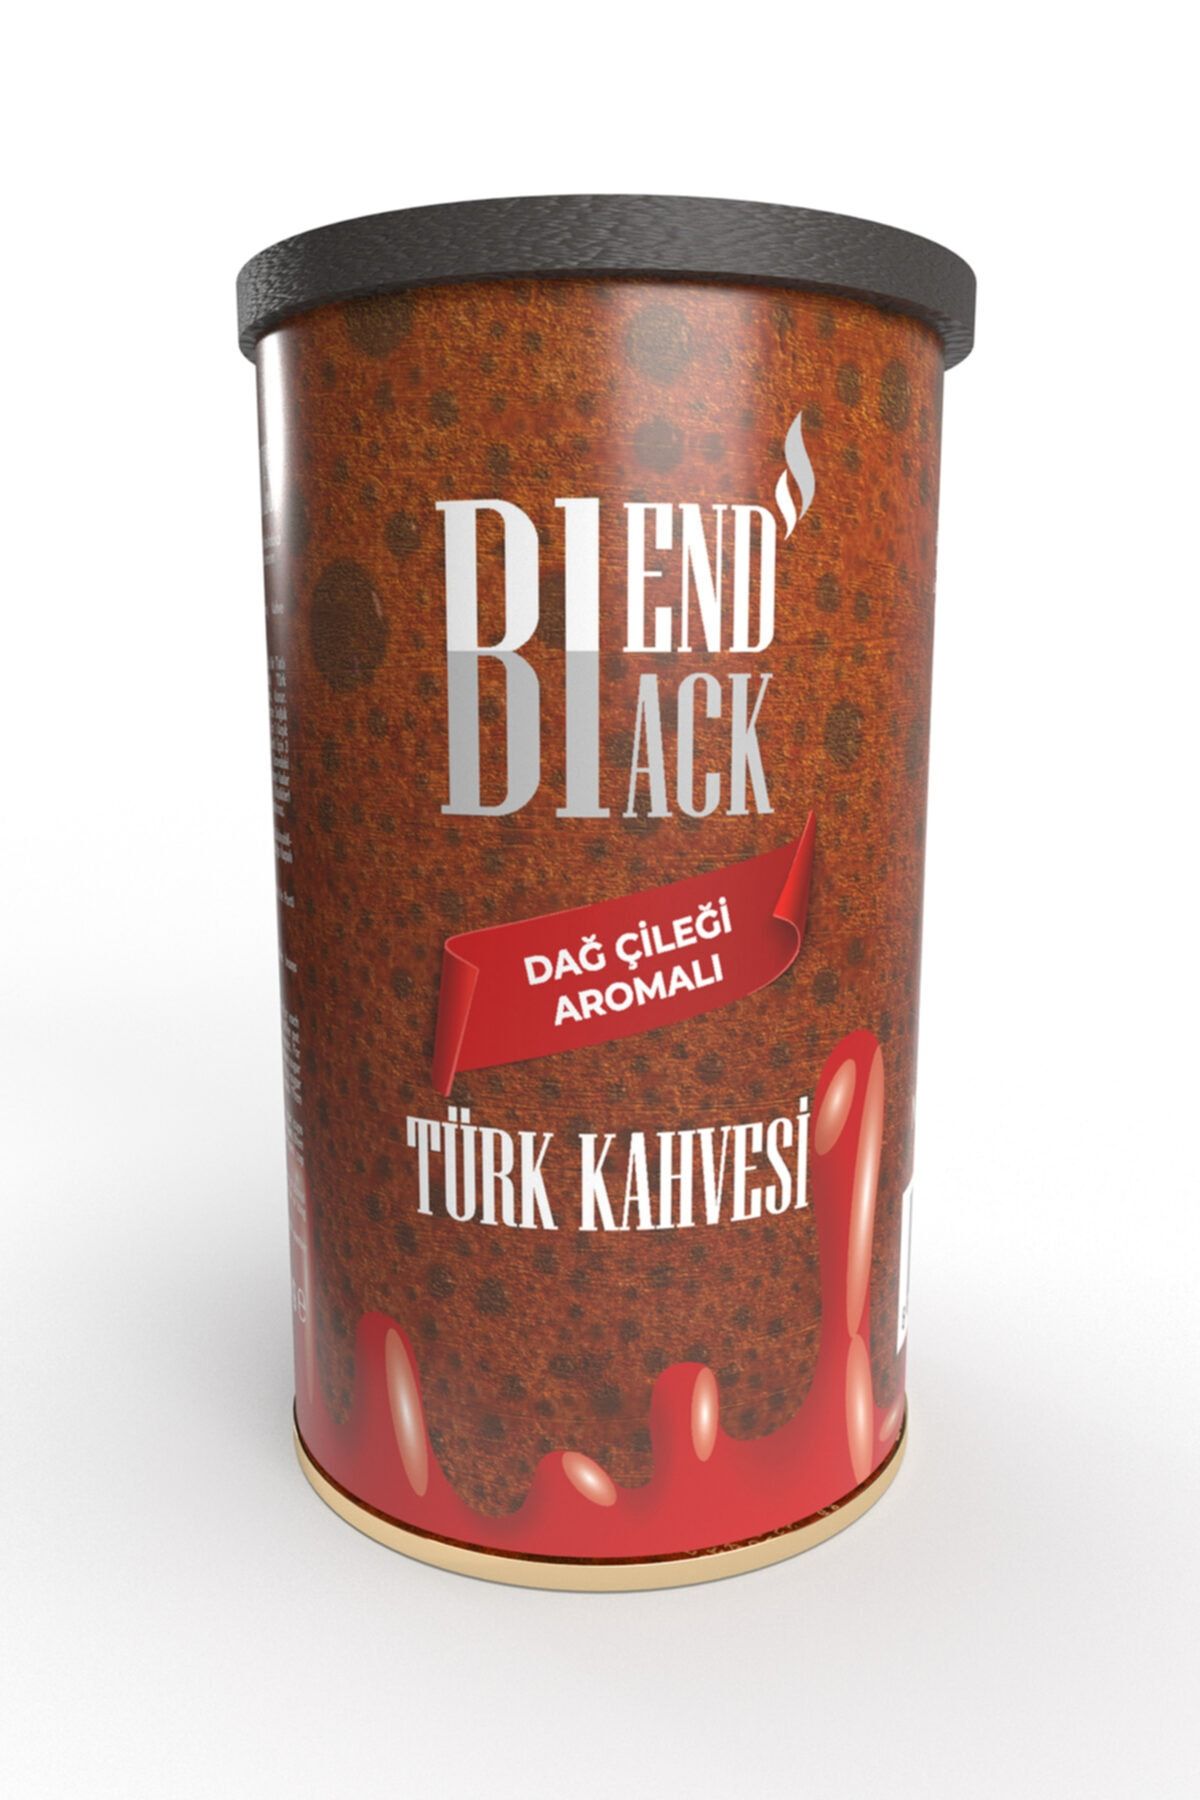 Blendblack Türk Kahvesi Dağ Çileği Aromalı 250gr Teneke Kutu